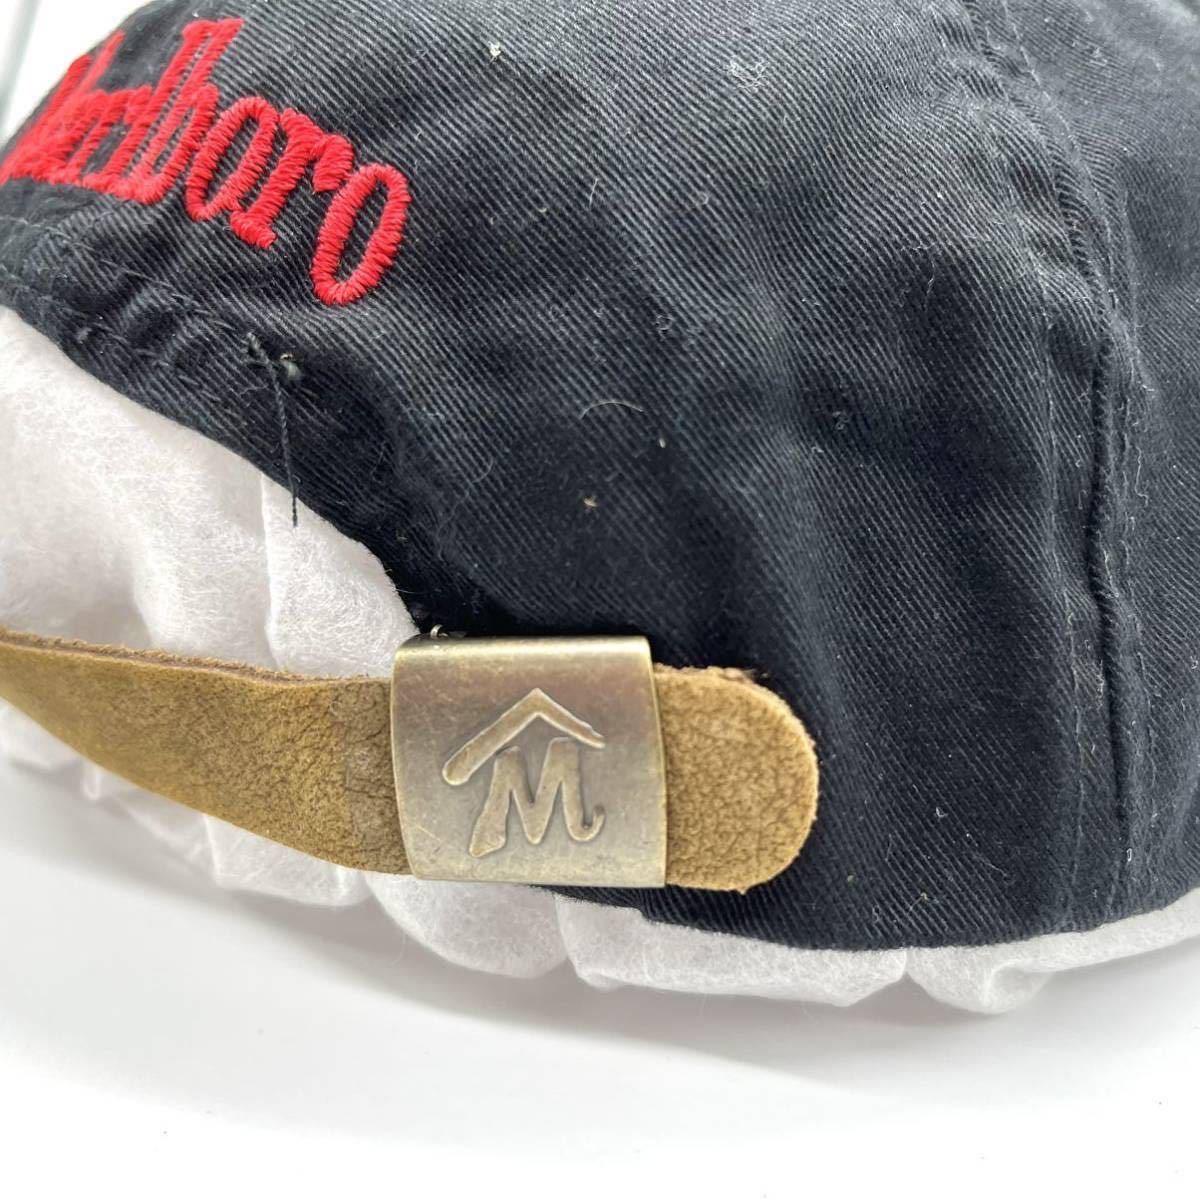 【デッドストック】90s MARLBORO(マルボロ) 刺繍ロゴキャップ 黒 レザーベルトバック 企業ロゴ タバコ オフィシャル当時物 ビンテージ 帽子_画像5